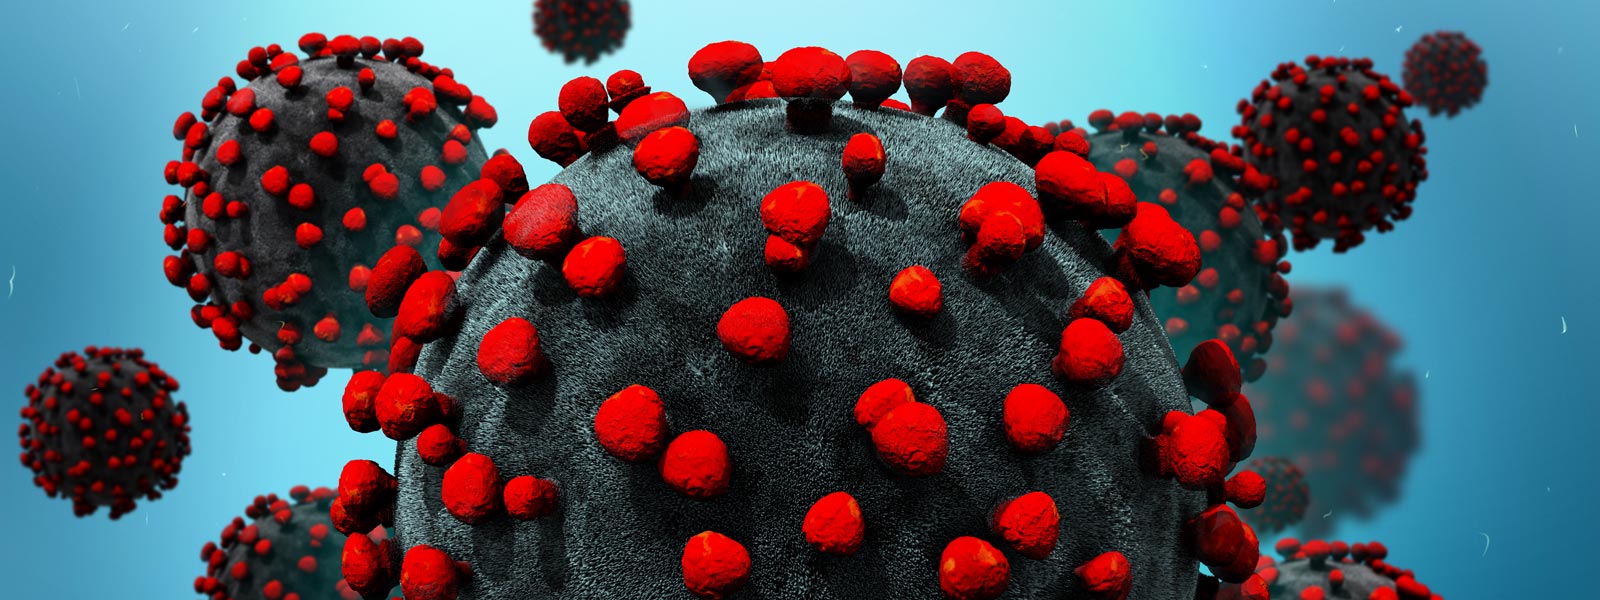 Close-up of coronavirus